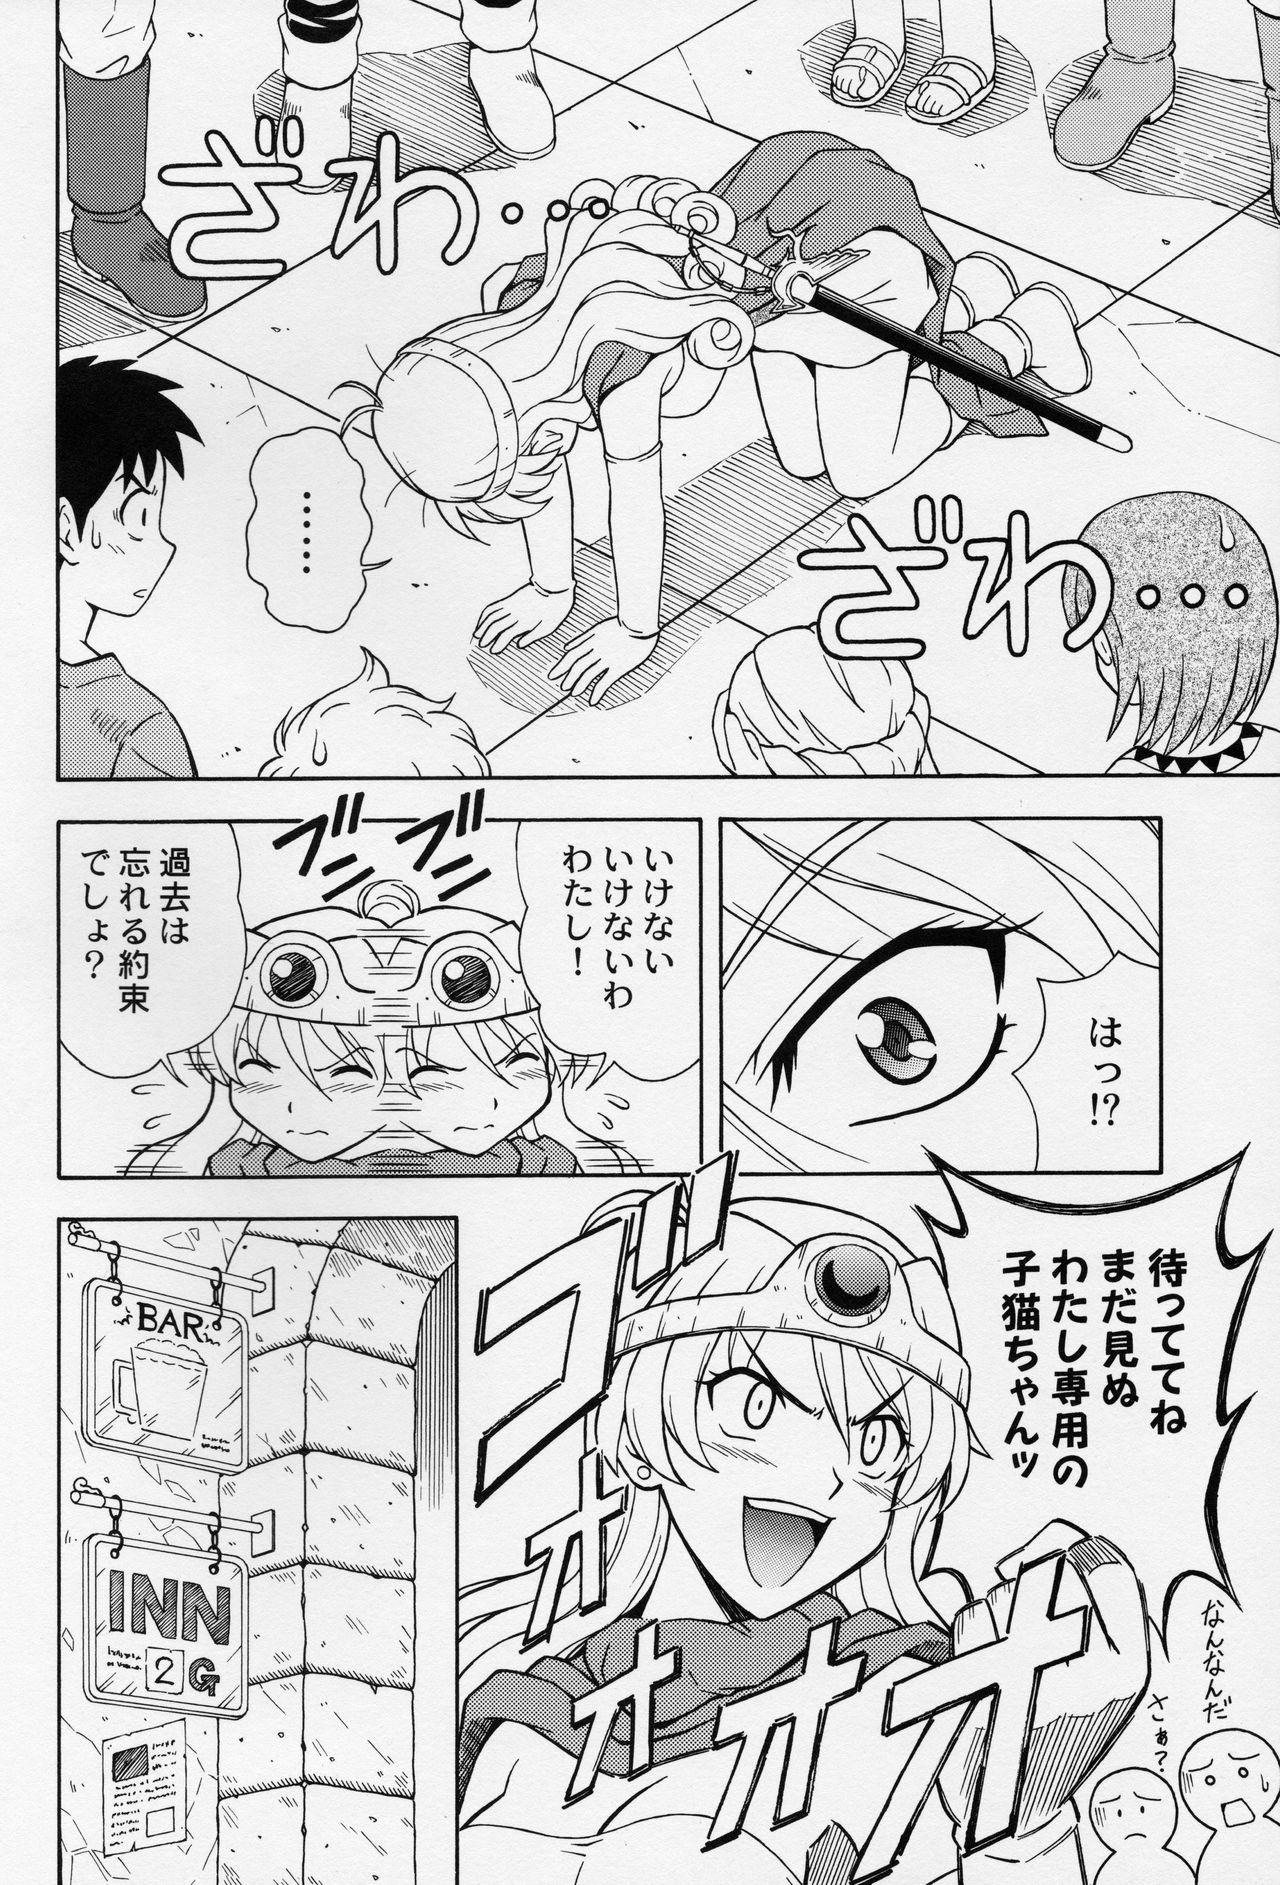 Rough Porn Moe Moe Quest Z Vol. 2 - Dragon quest iii Chudai - Page 9